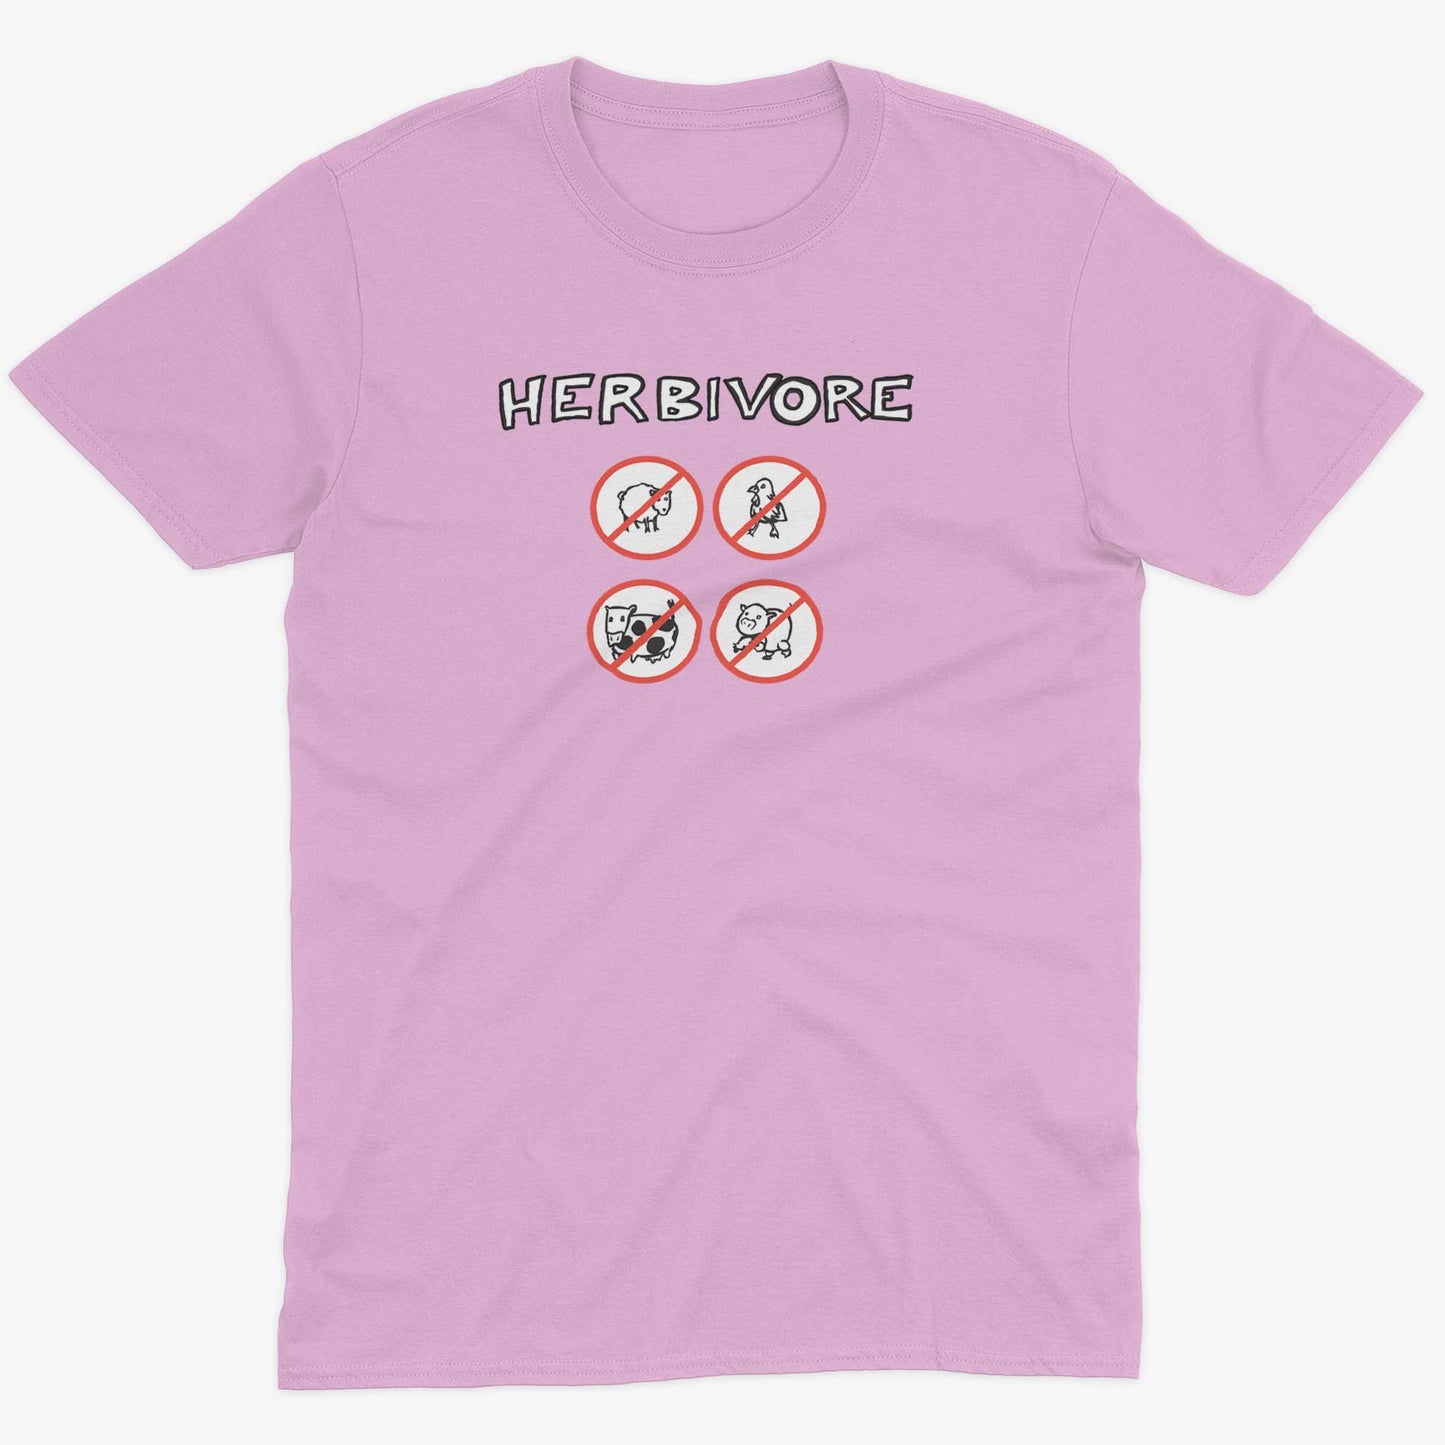 Herbivore Unisex Or Women's Cotton T-shirt-Pink-Unisex